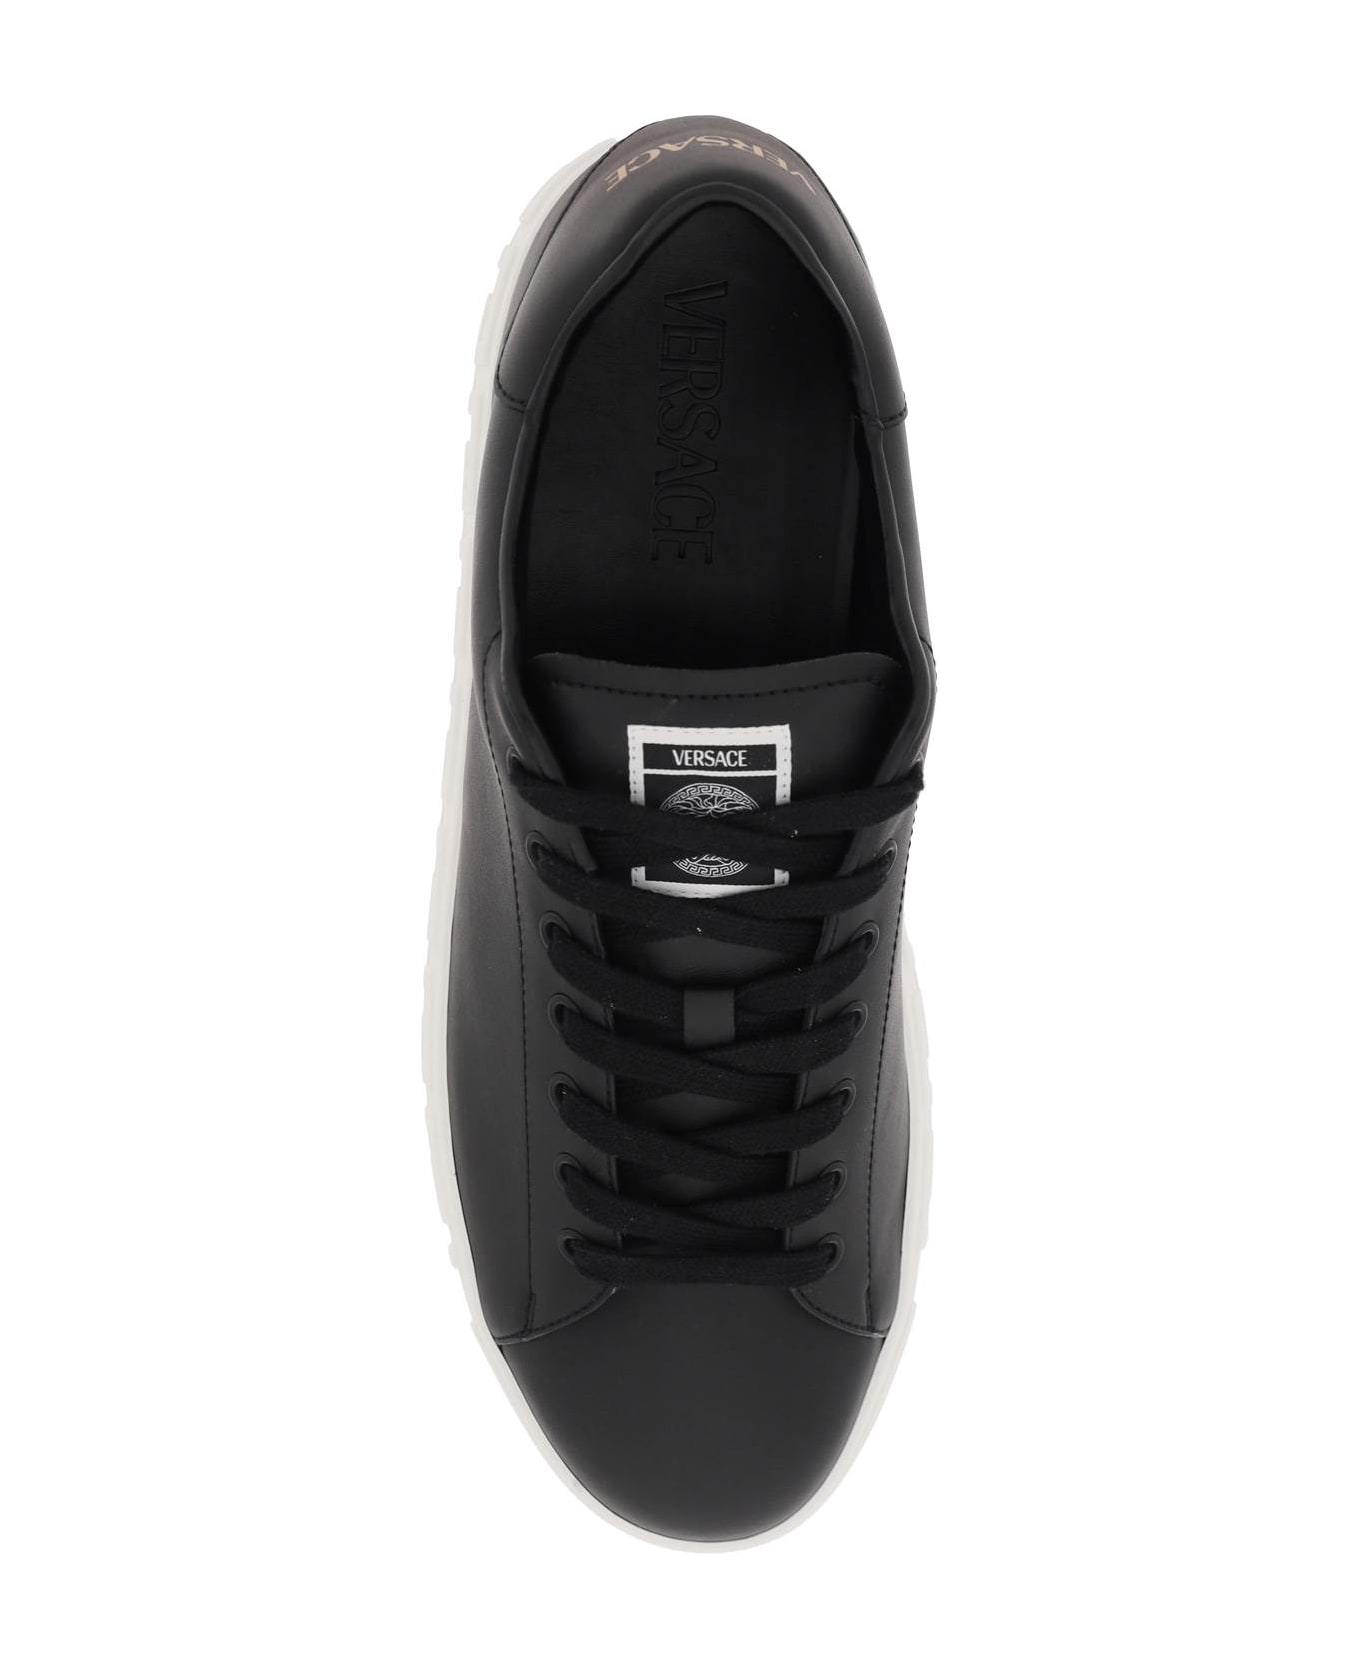 Versace Black Leather Sneakers - Black